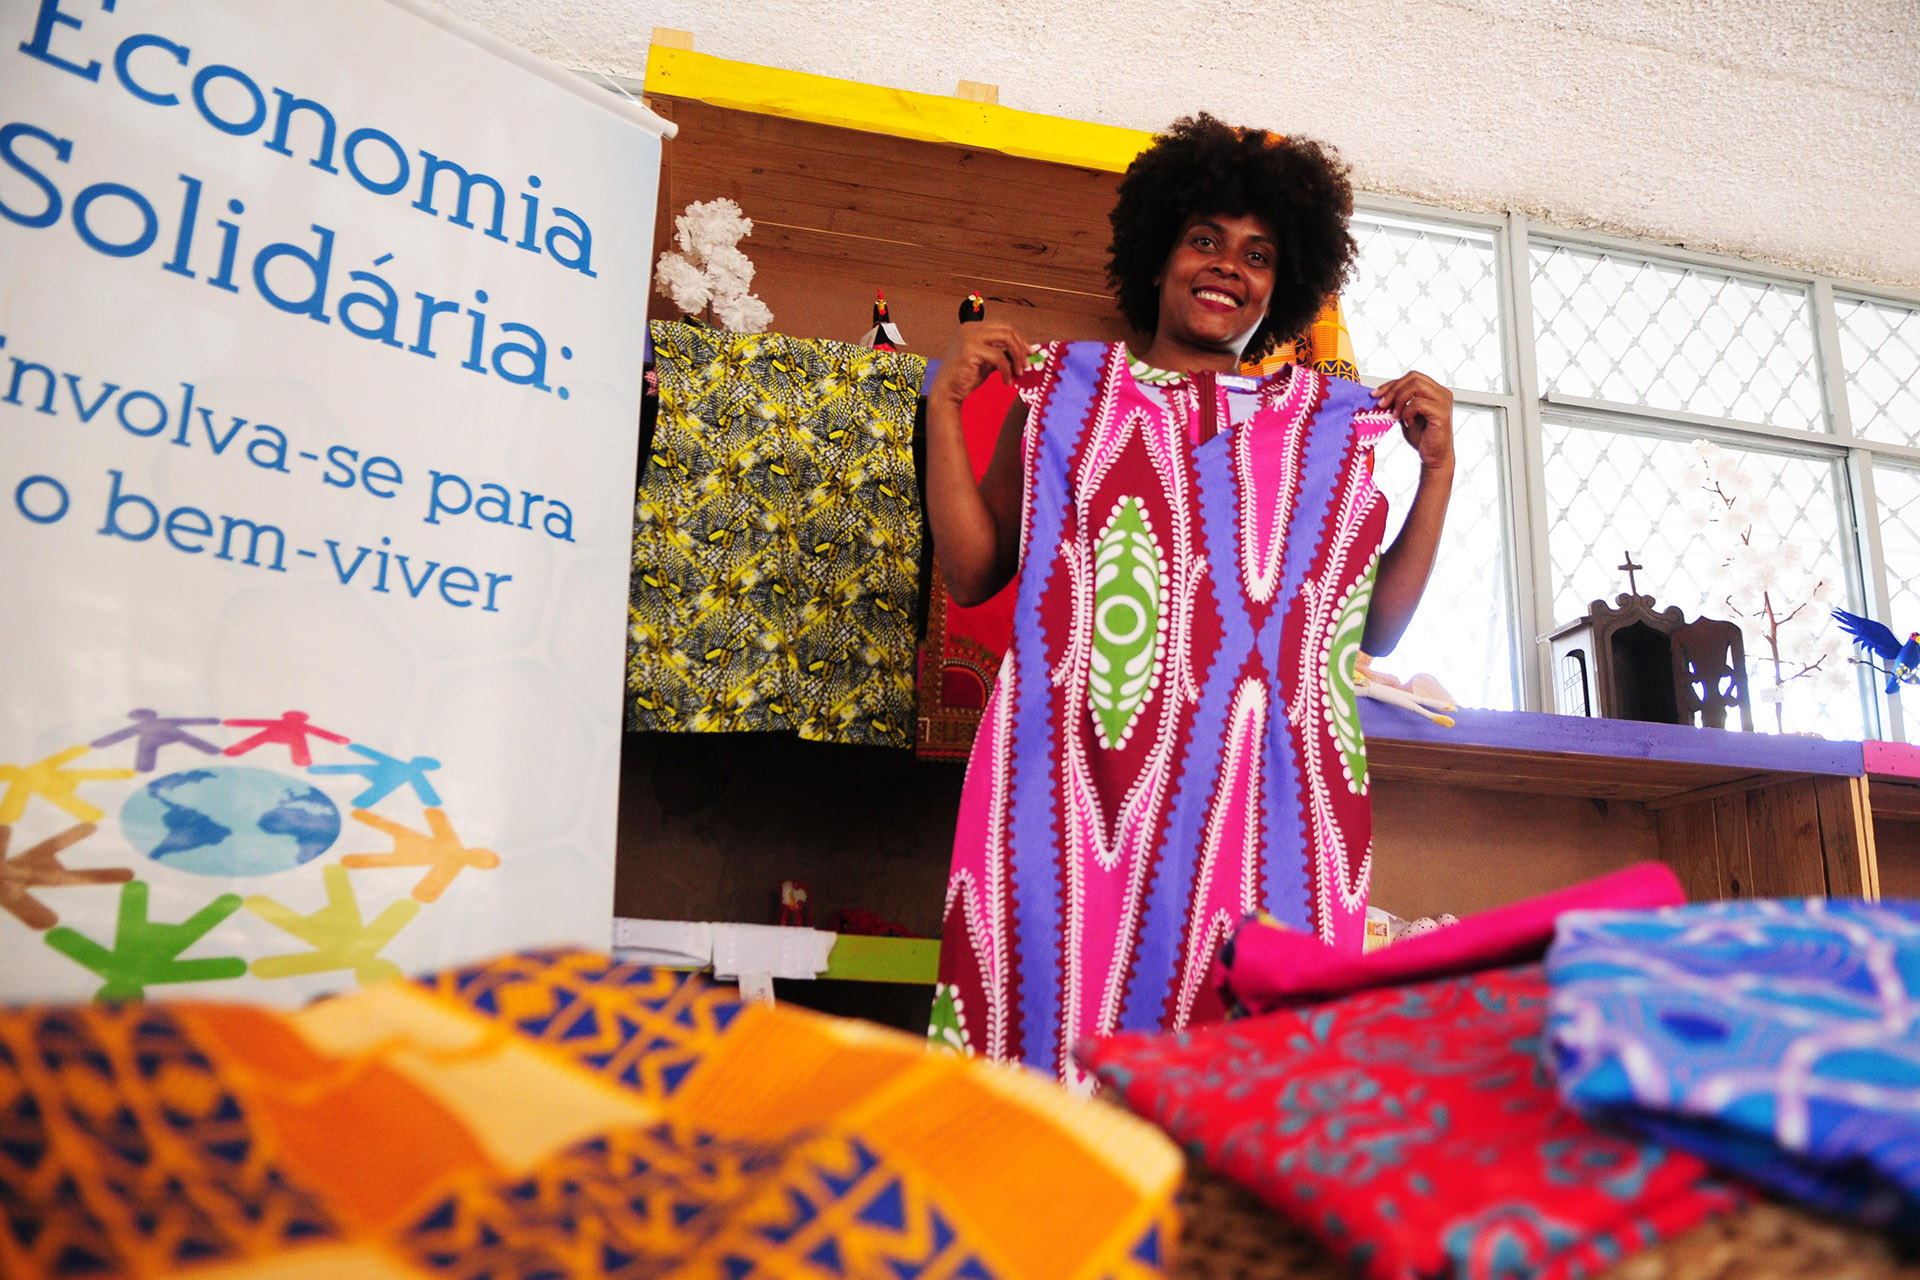 Feira de Afroempreendedorismo do DF inicia nesta quinta (16) e procura estimular negócios liderados pela comunidade negra. A quilombola Sirlene Barbosa vai expor roupas com temática afro.